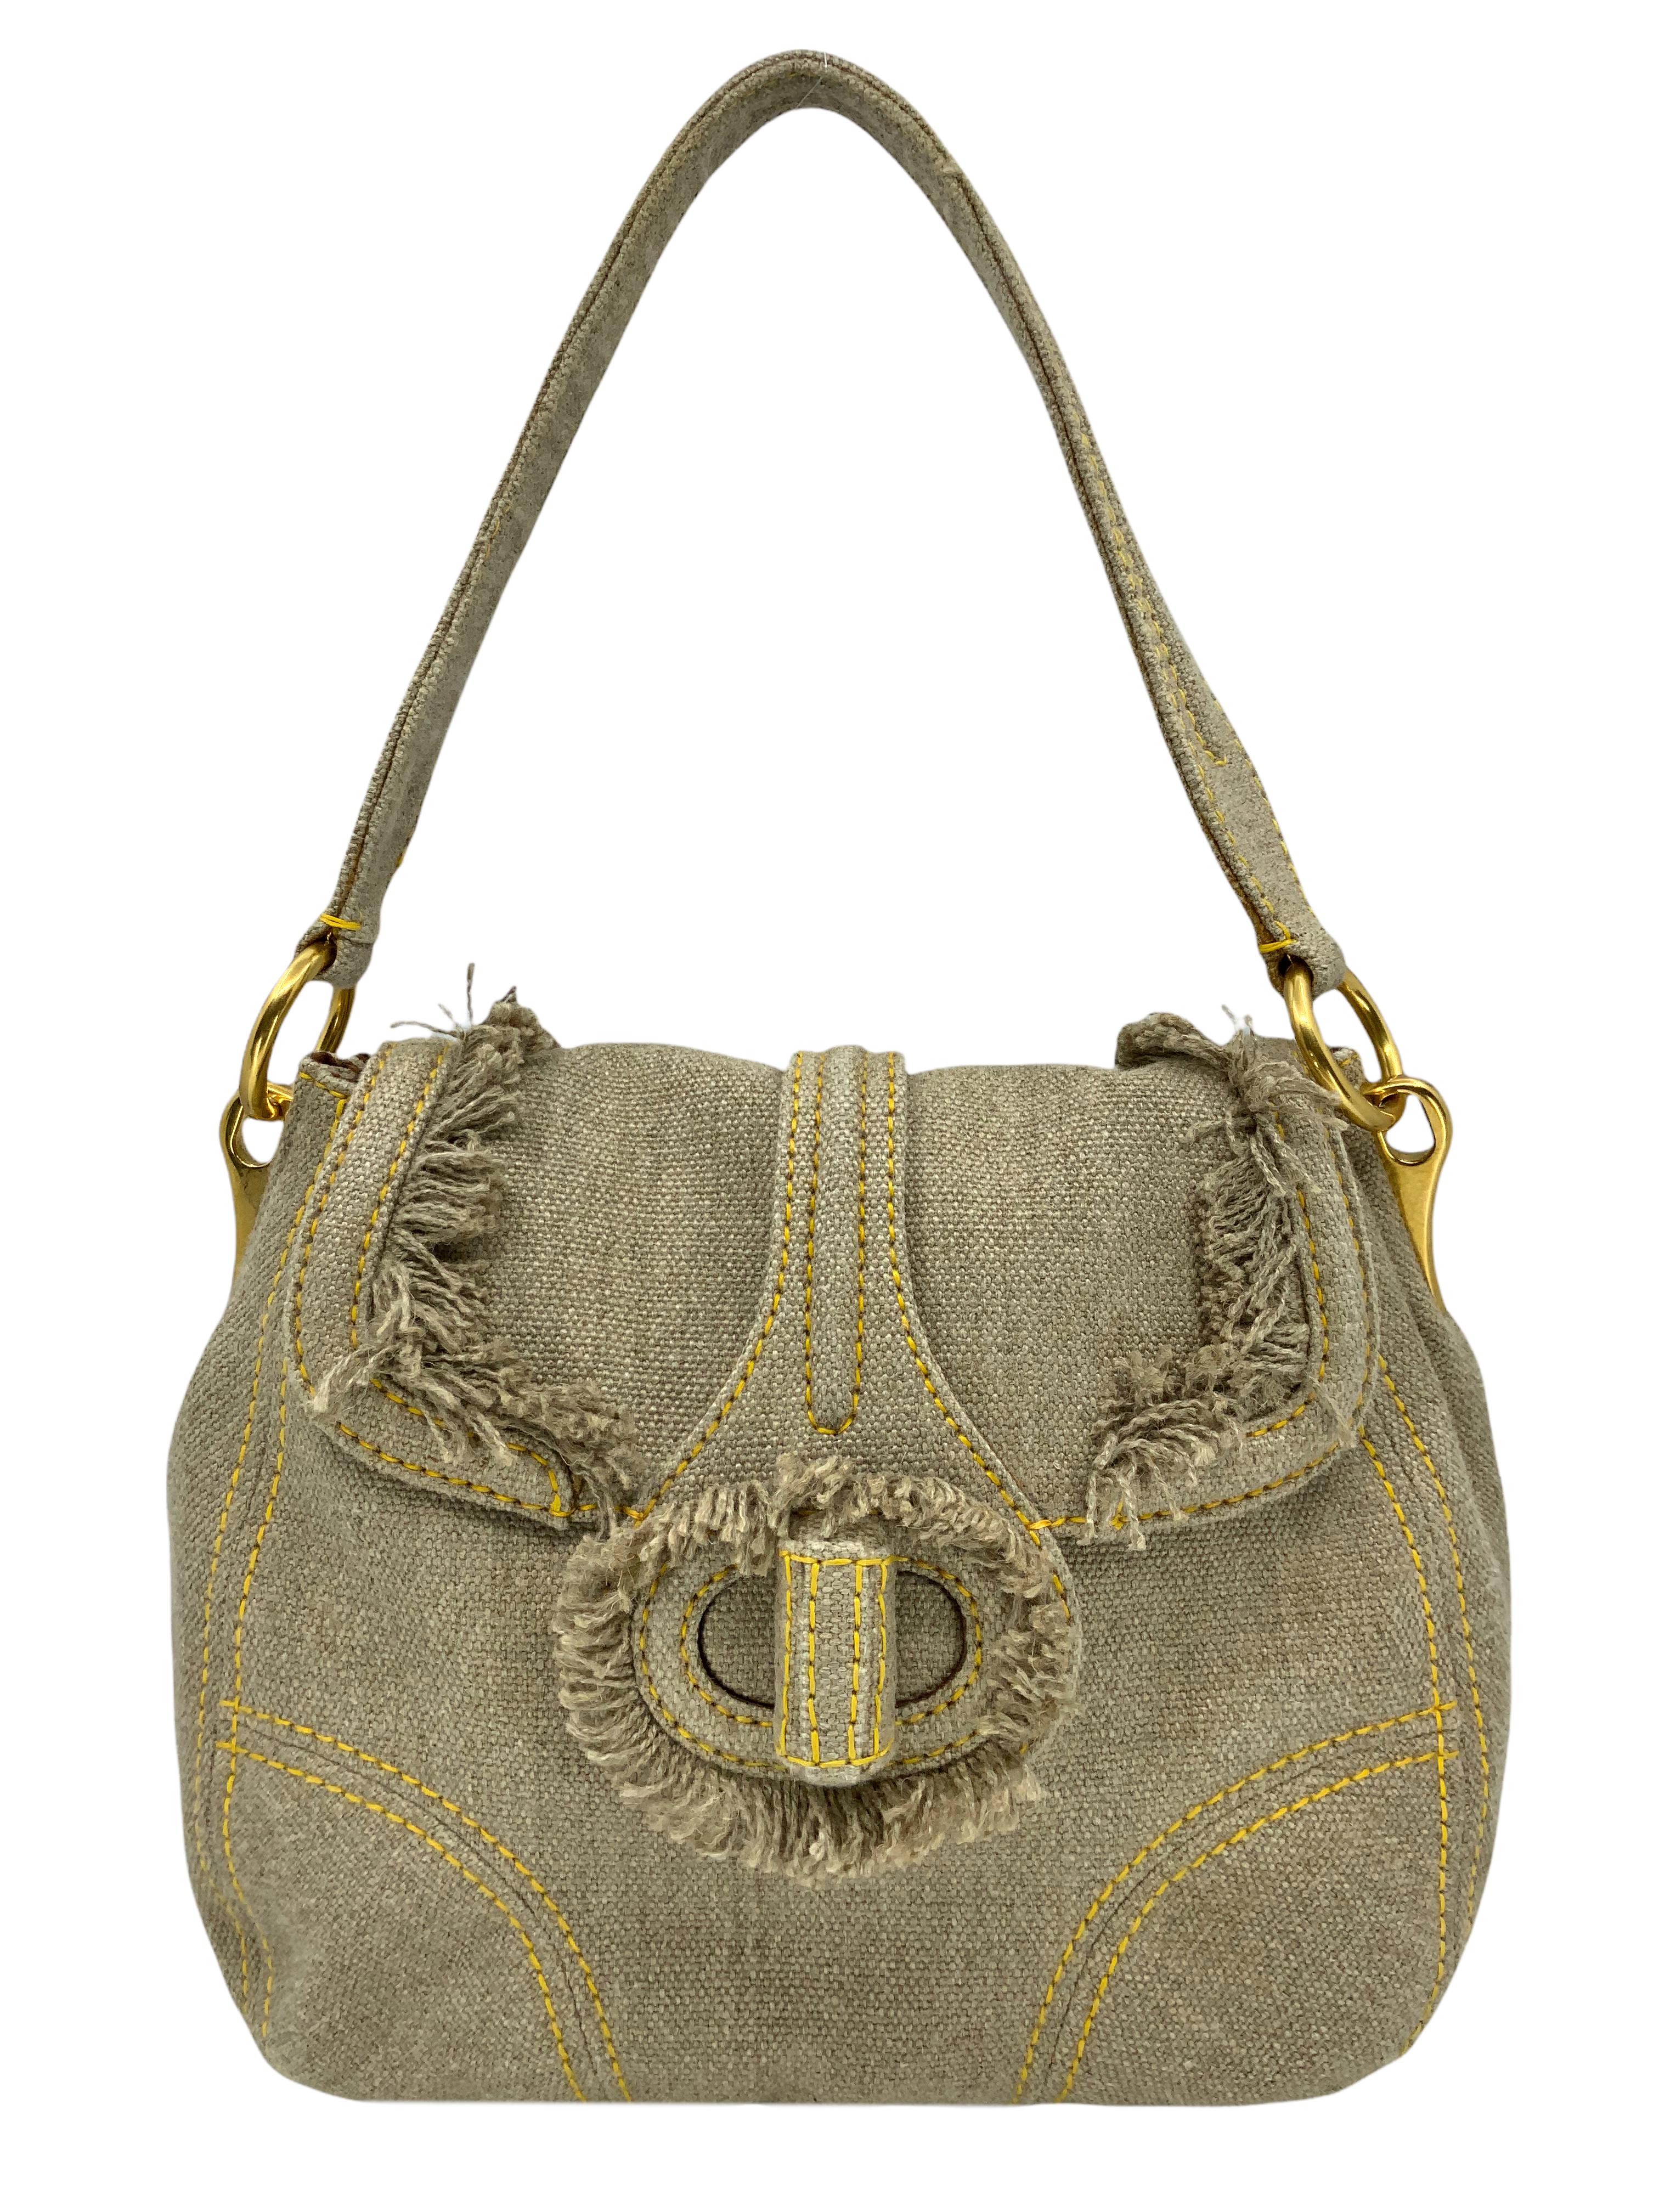 Prada Saffiano Pattina Flap Bag w/Tags - Neutrals Shoulder Bags, Handbags -  PRA844551